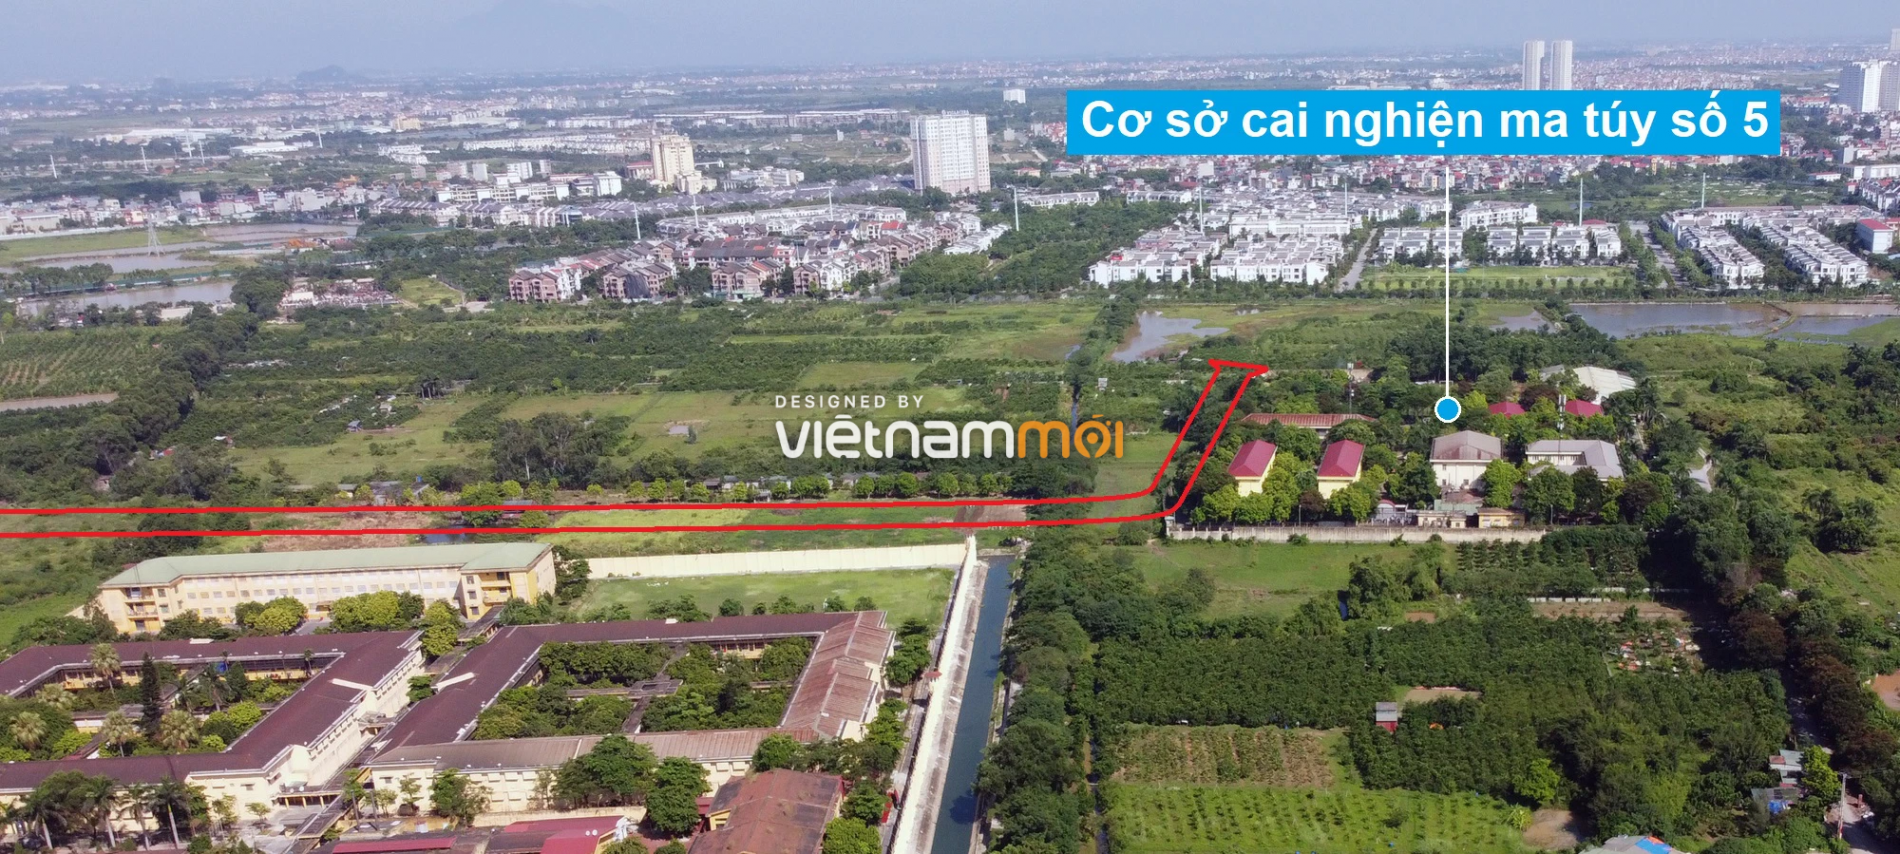 Những khu đất sắp thu hồi để mở đường ở phường Xuân Phương, Nam Từ Liêm, Hà Nội (phần 8) - Ảnh 10.